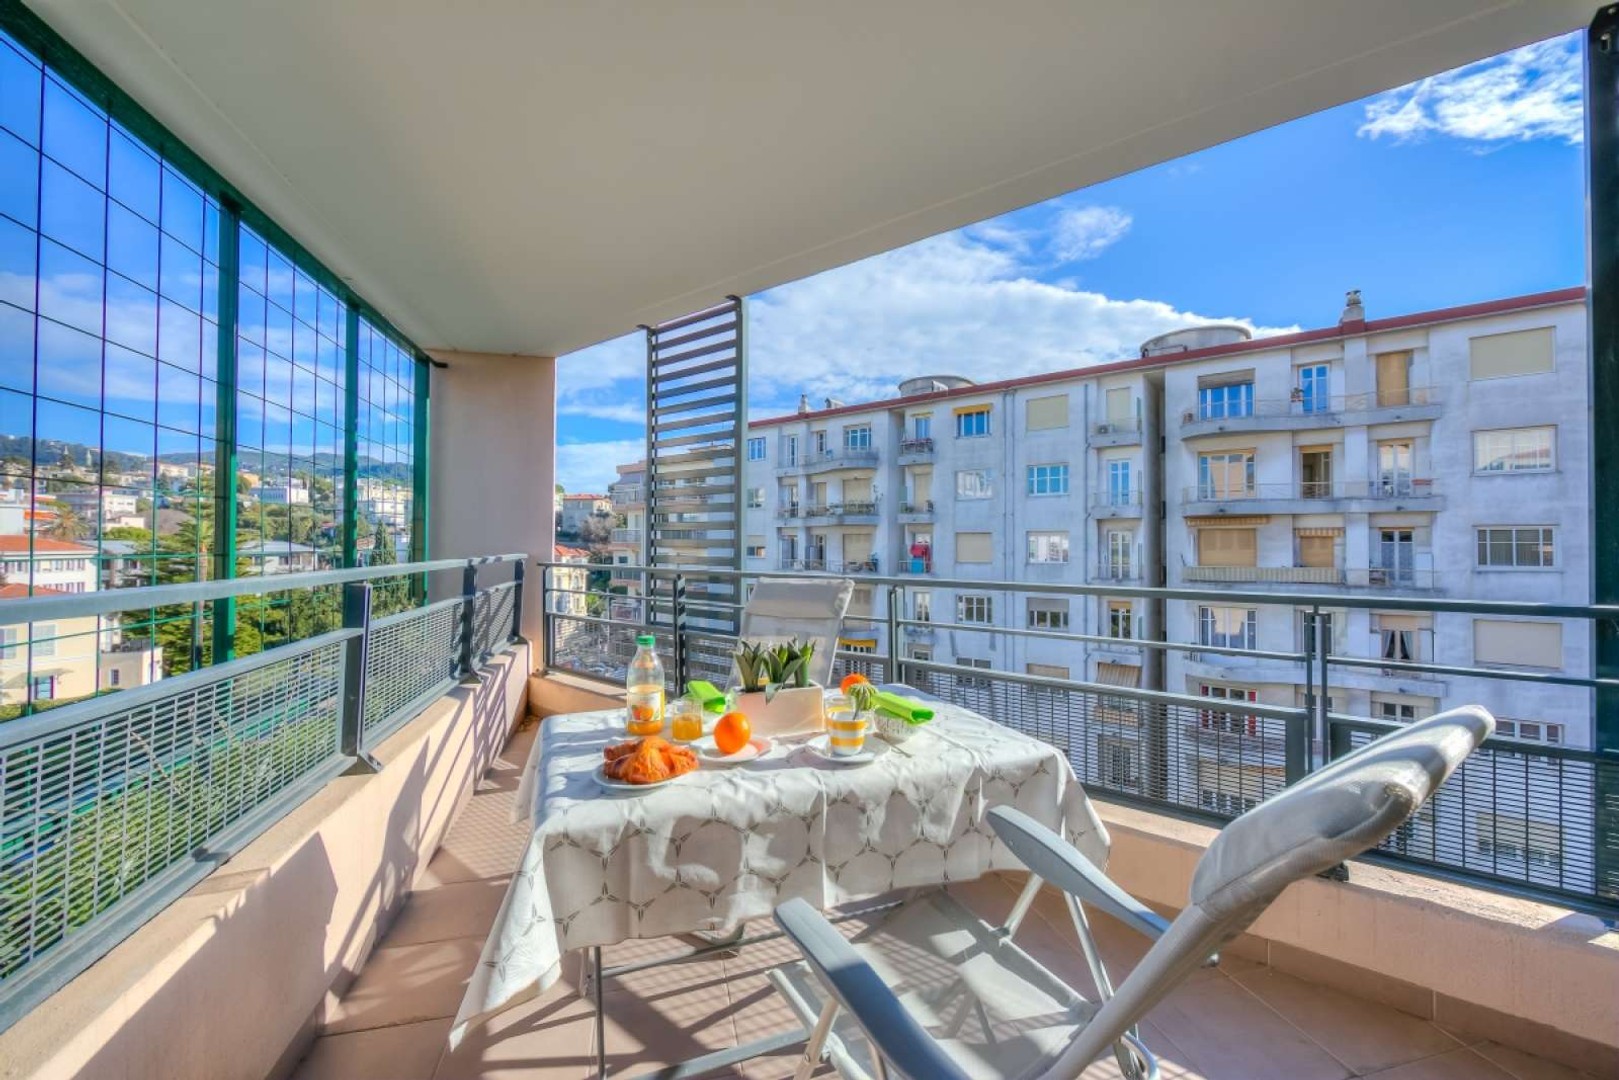 Apartamento moderno y luminoso en Niza